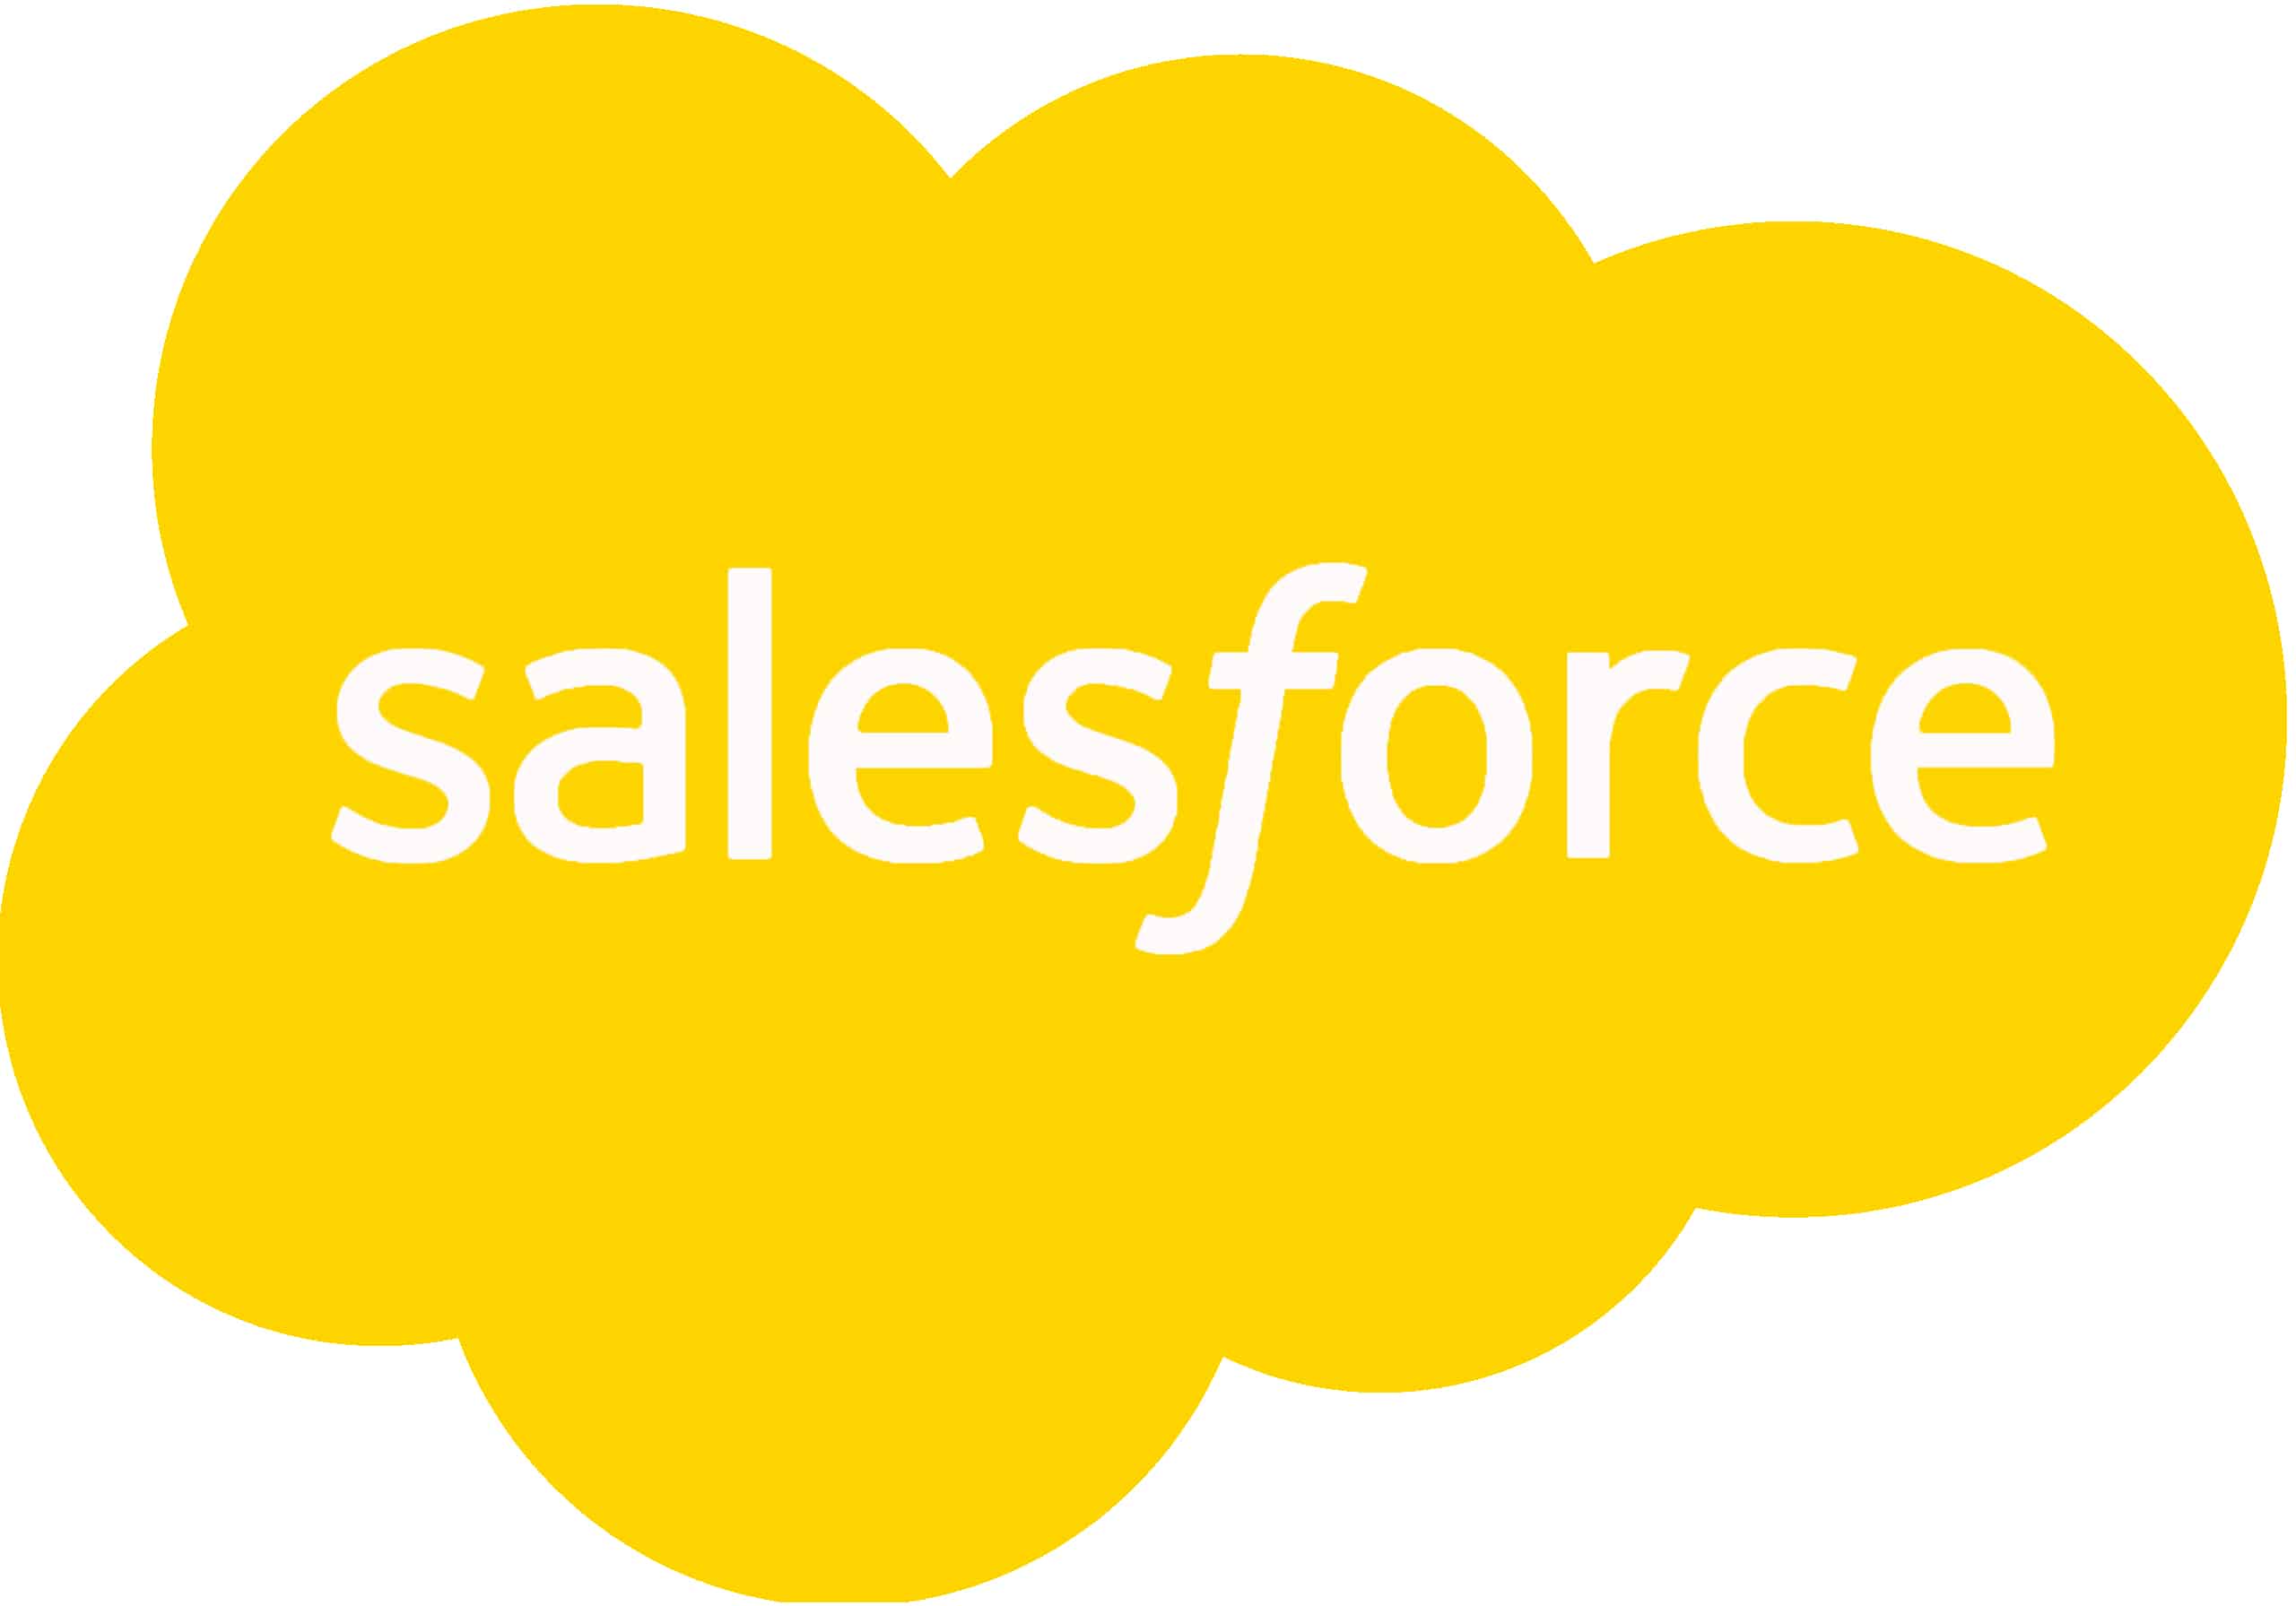 salesforce-logo-png